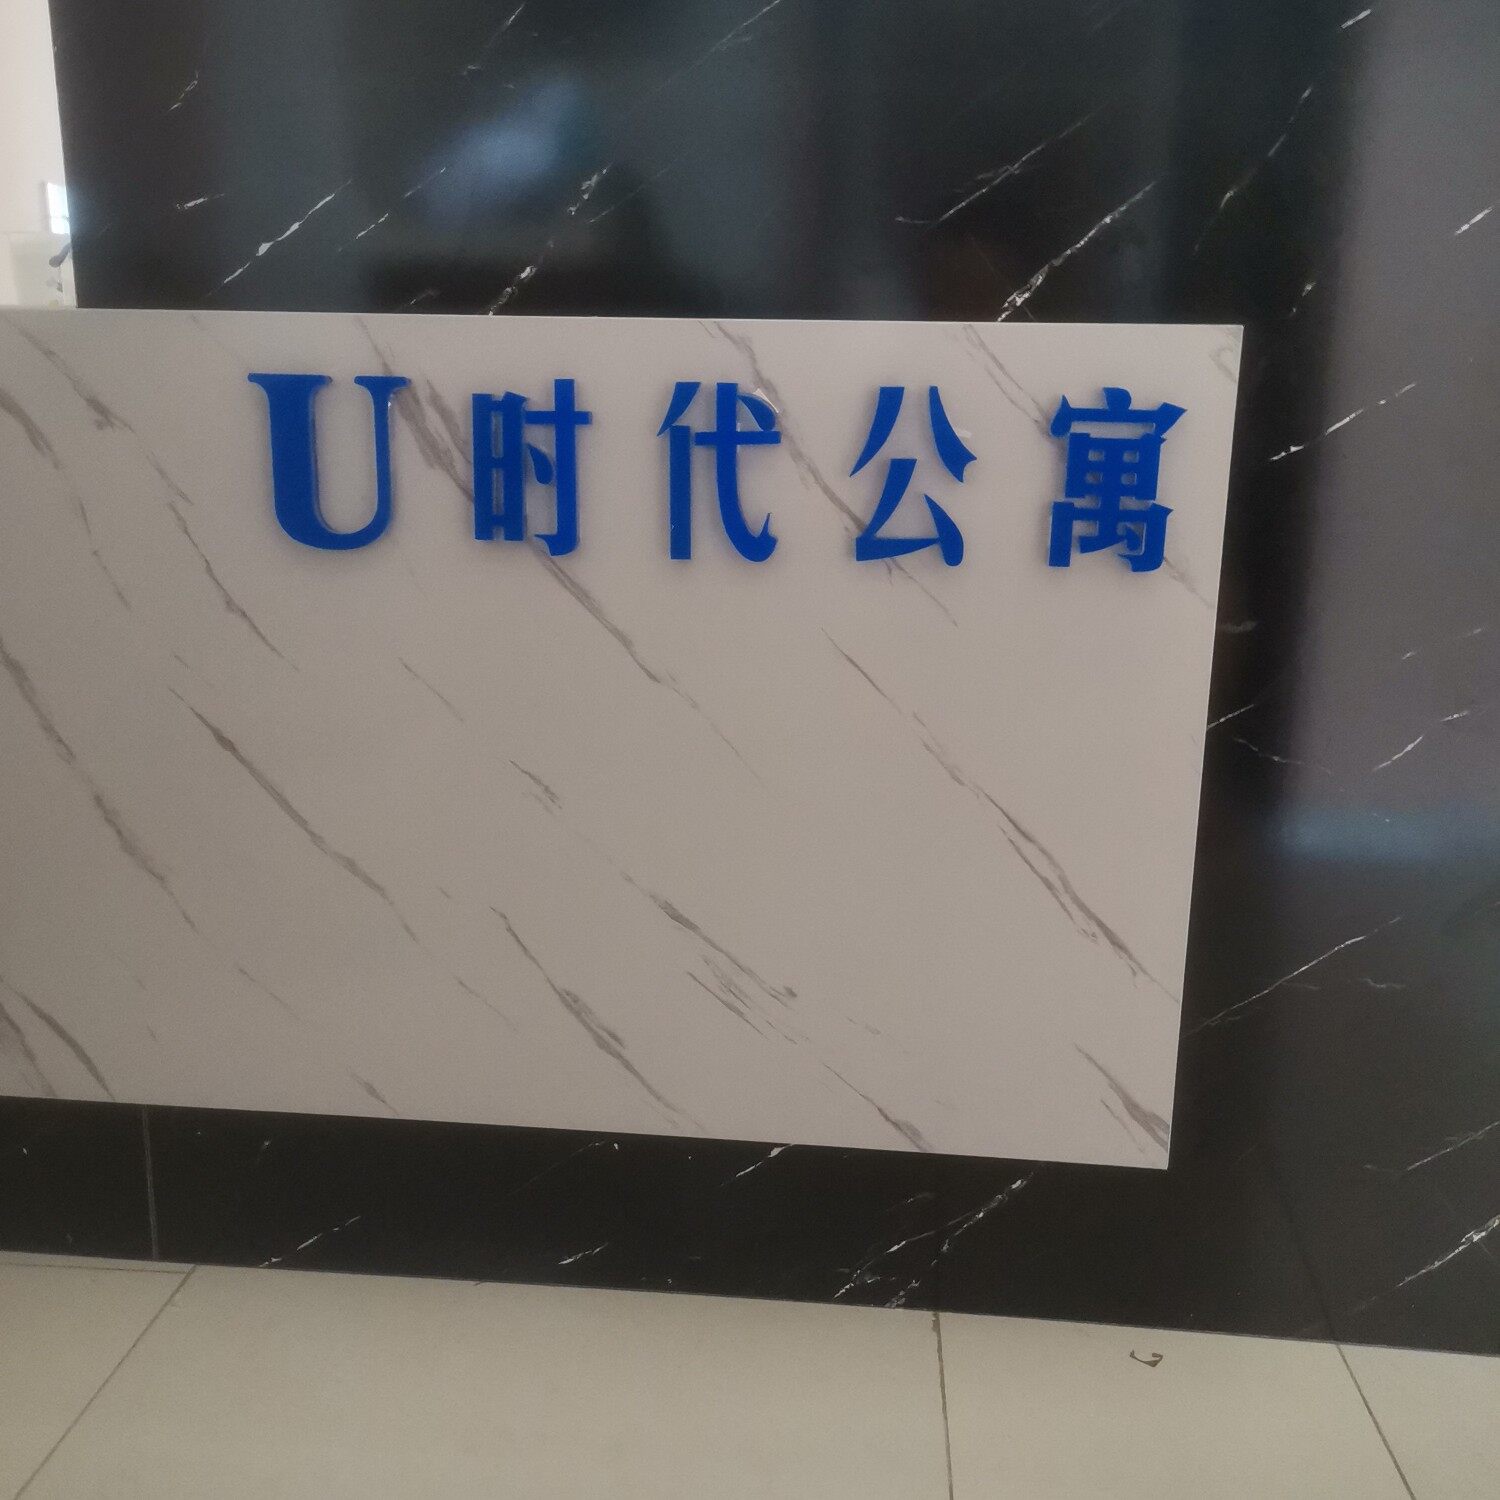 客旅悦酒店管理服务部招聘logo